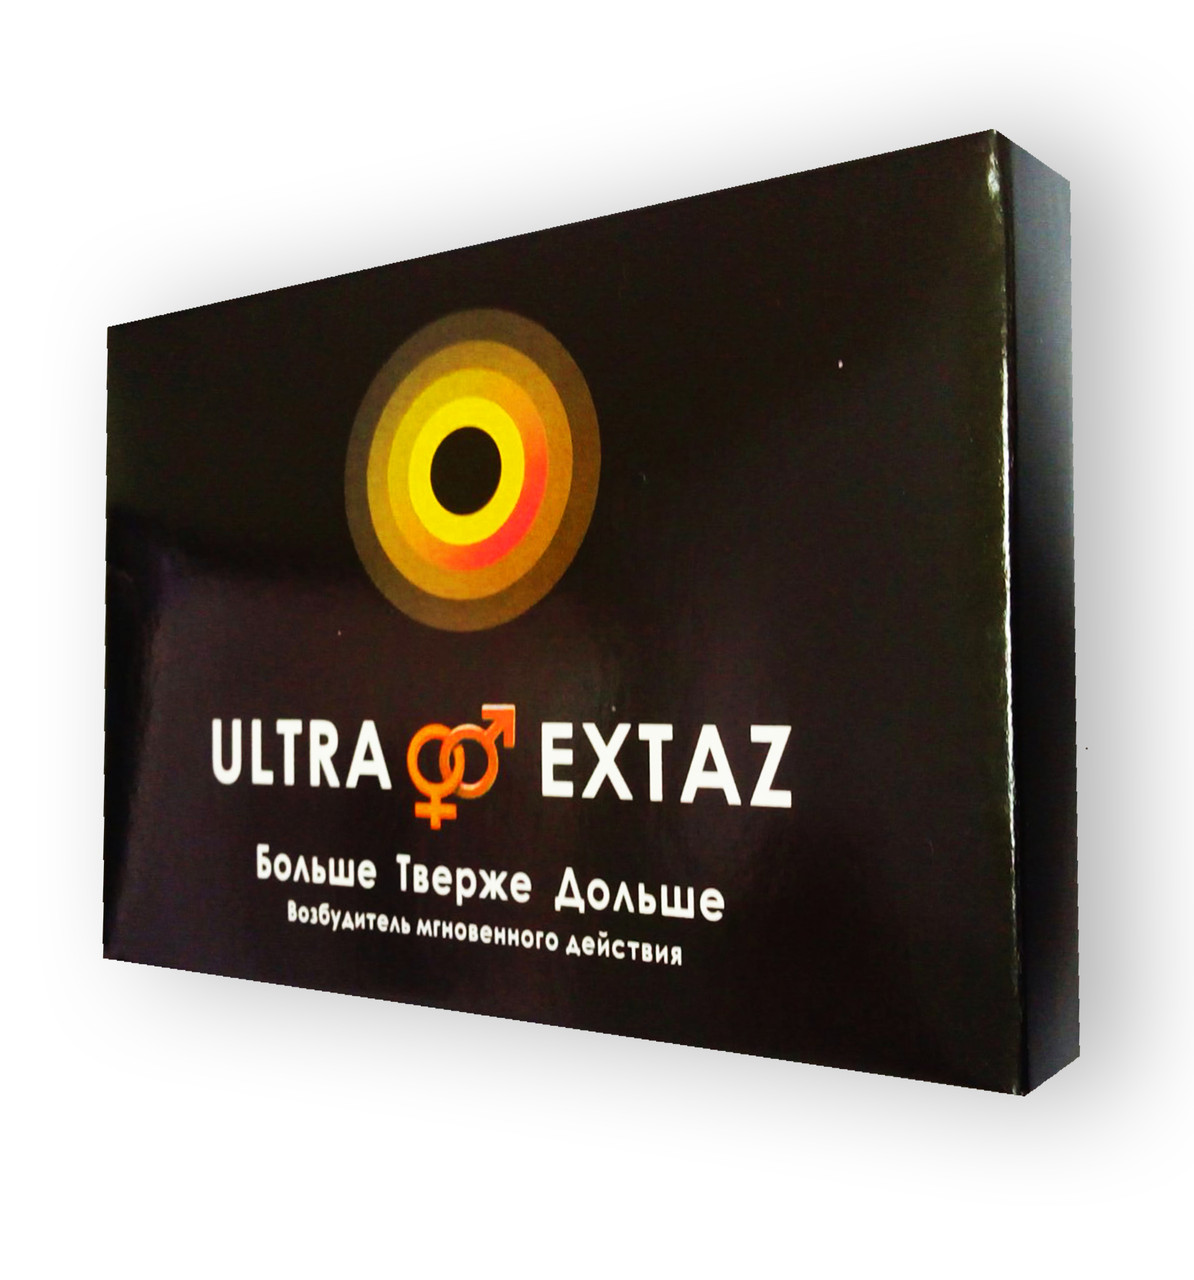 Ultra Extaz (Ультра Екстаз)